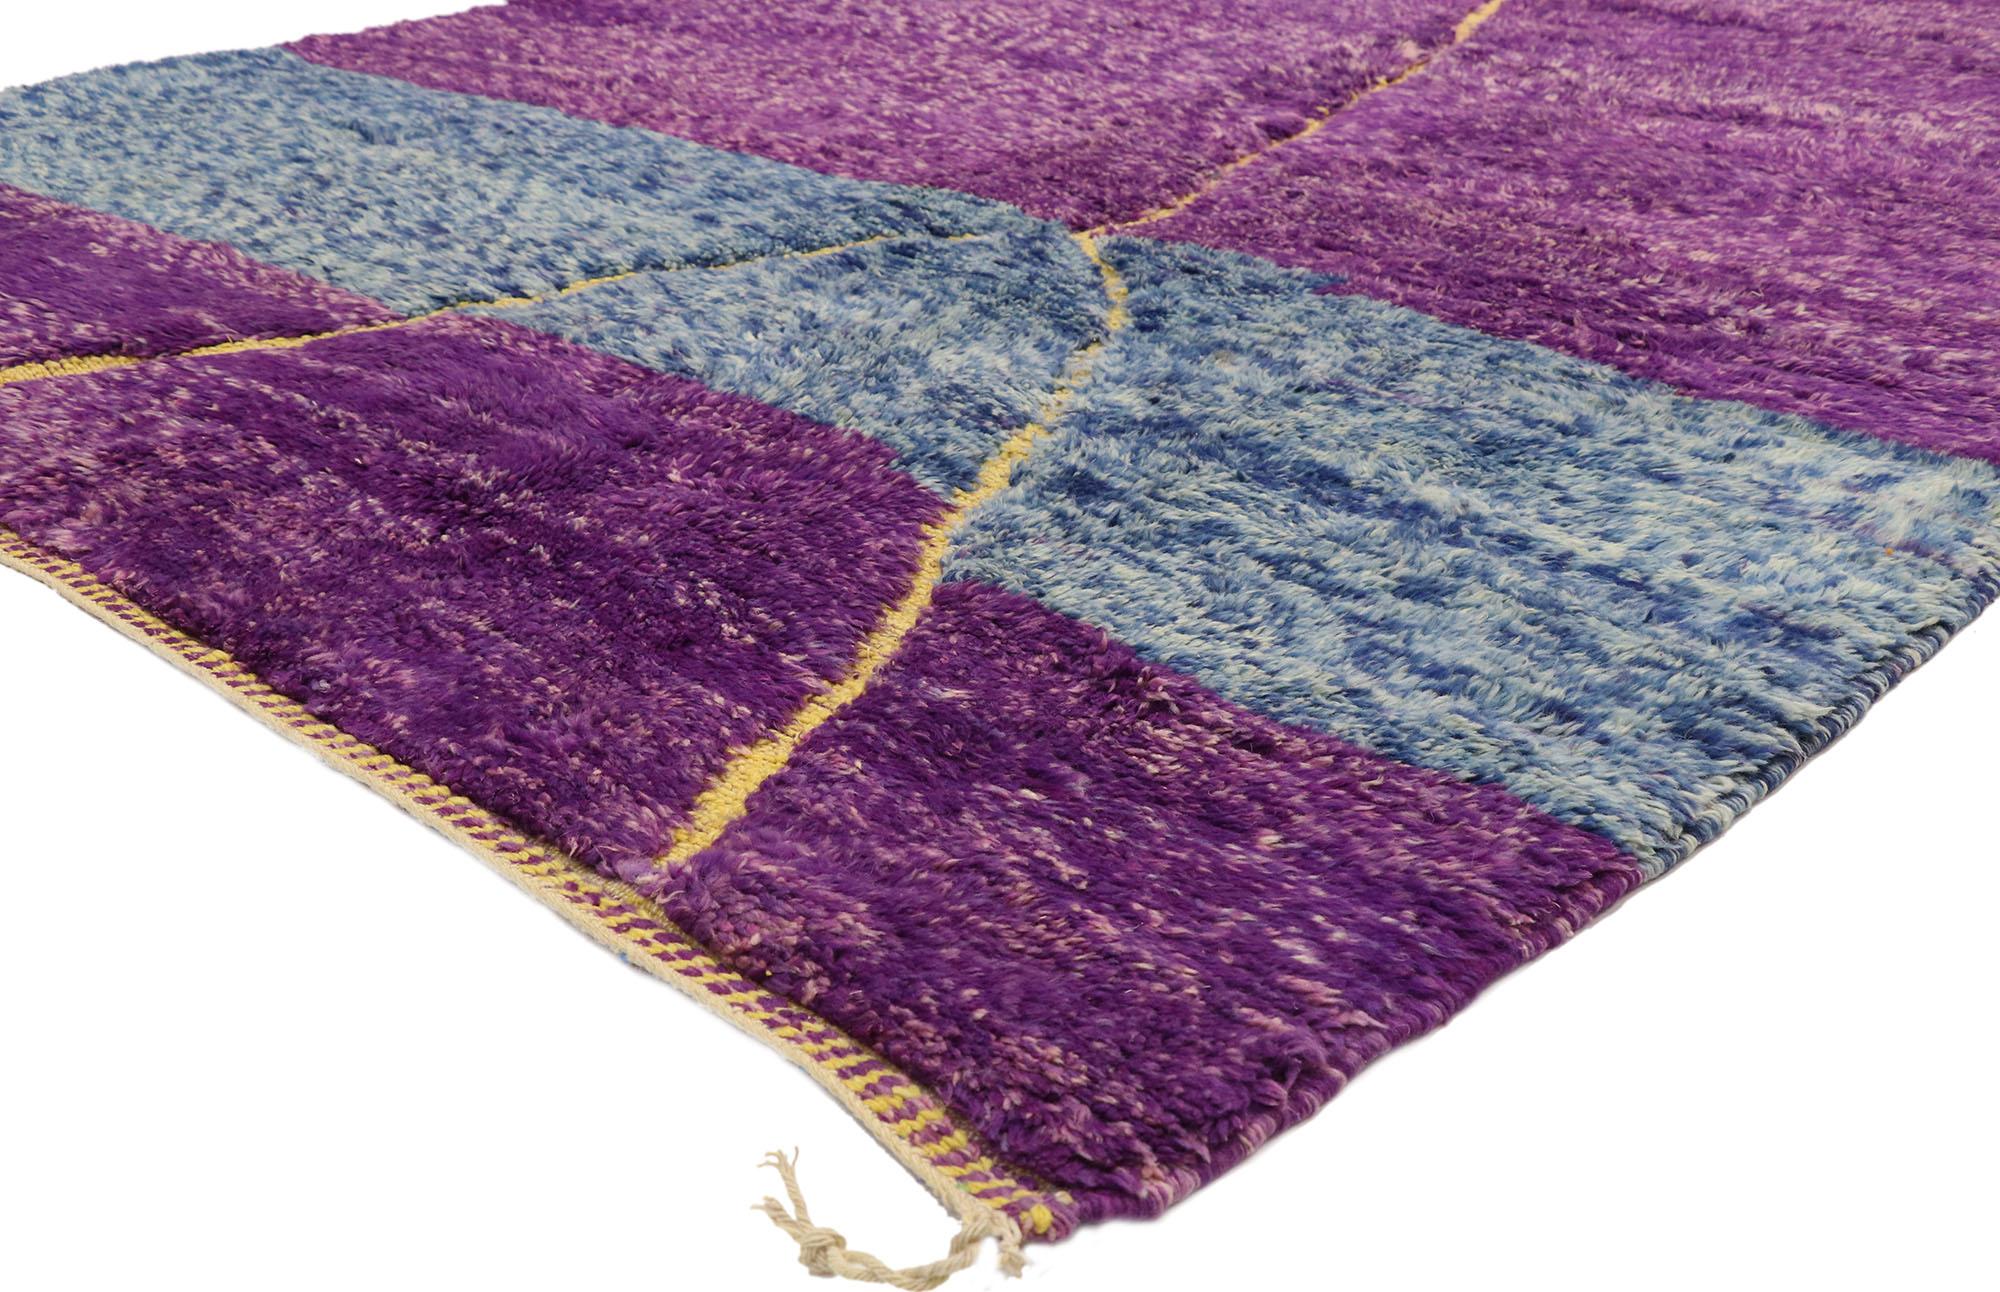 20994 Tapis marocain Beni Mrirt violet, 07'02 x 10'02. Les tapis Beni Mrirt incarnent une tradition vénérée du tissage marocain, réputés pour leur texture luxueuse, leurs motifs géométriques et leurs teintes terreuses sereines. Fabriqués à la main